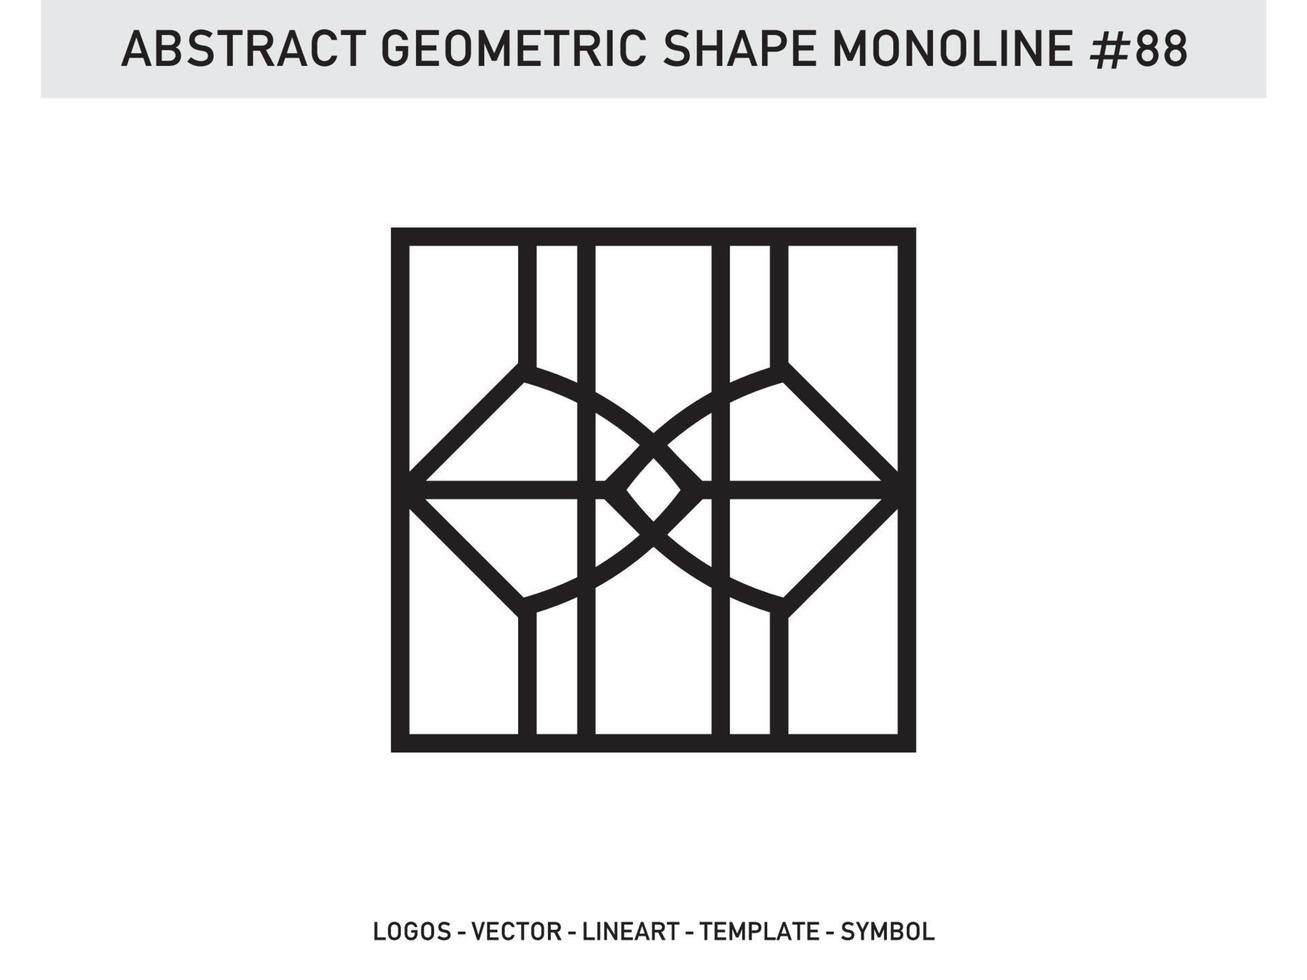 Ornament geometrische Form monoline abstrakte Linie freier Vektor